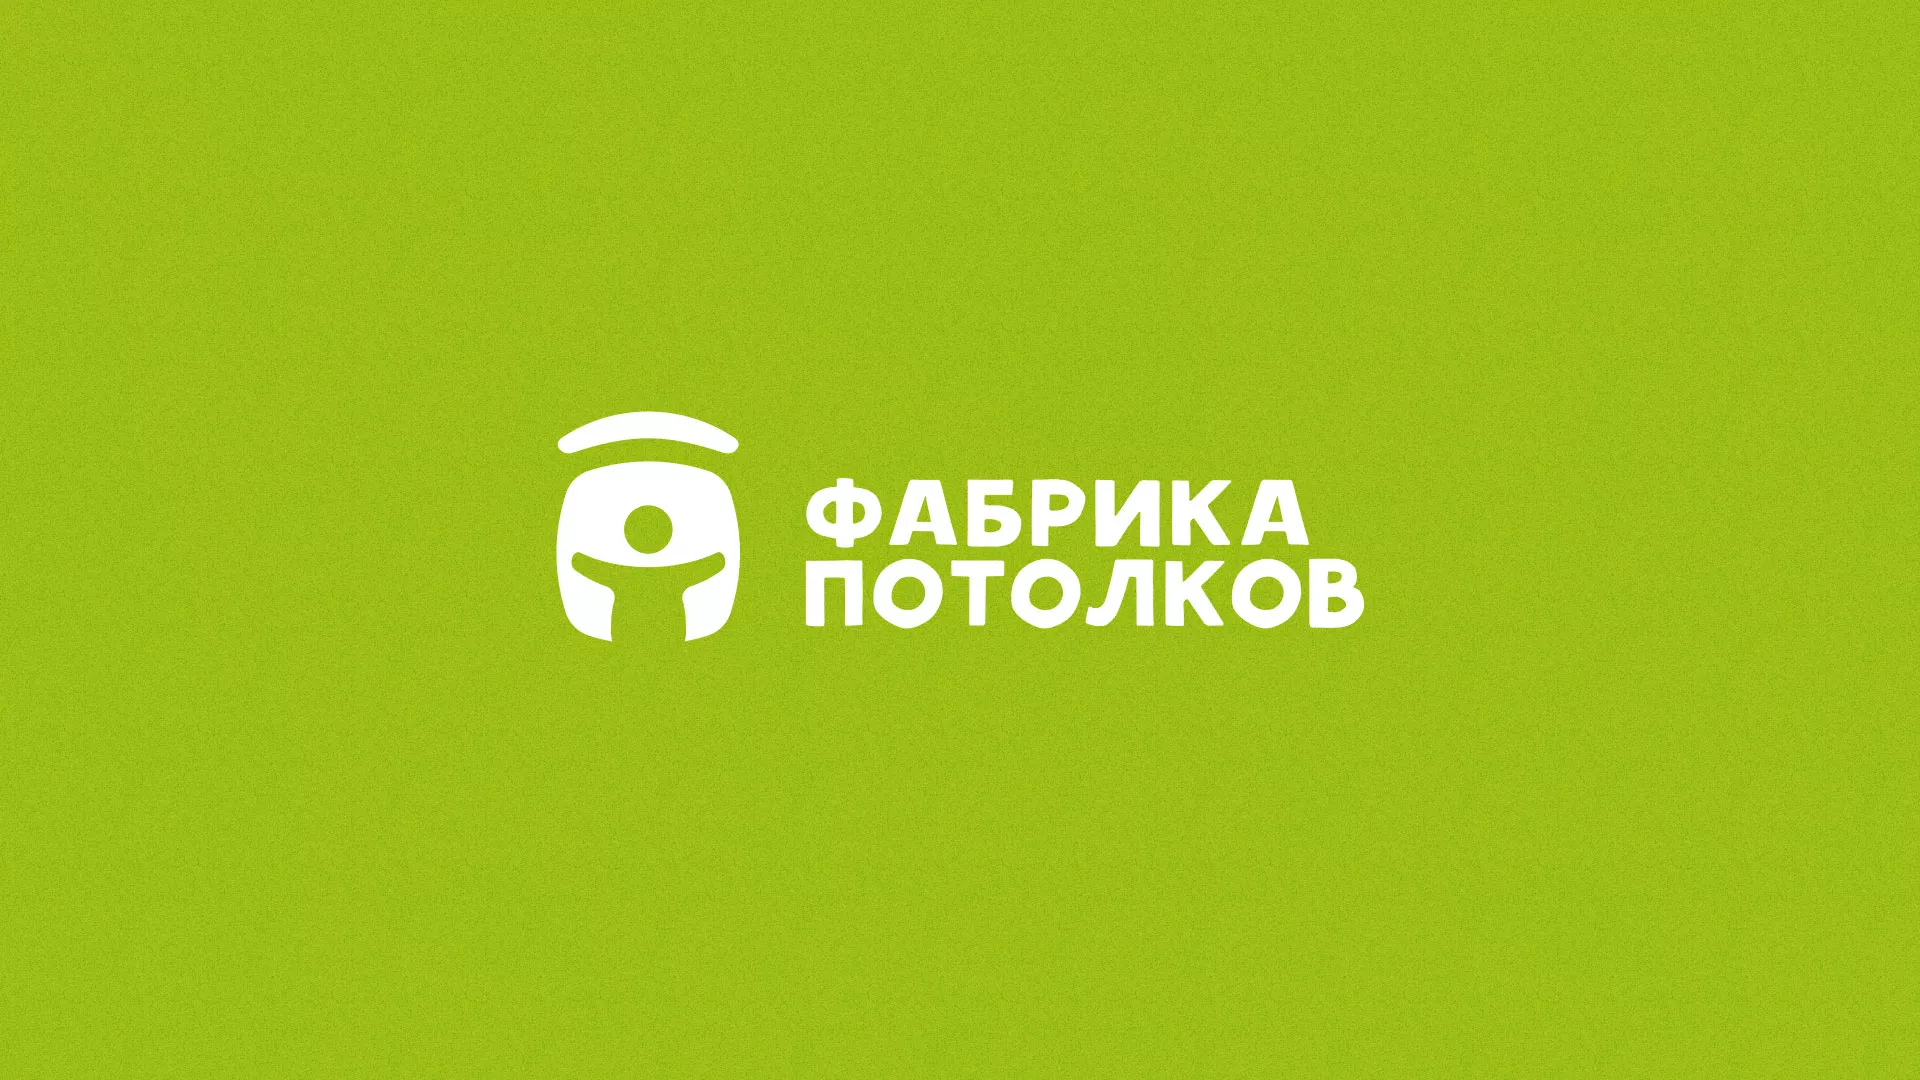 Разработка логотипа для производства натяжных потолков в Балабаново